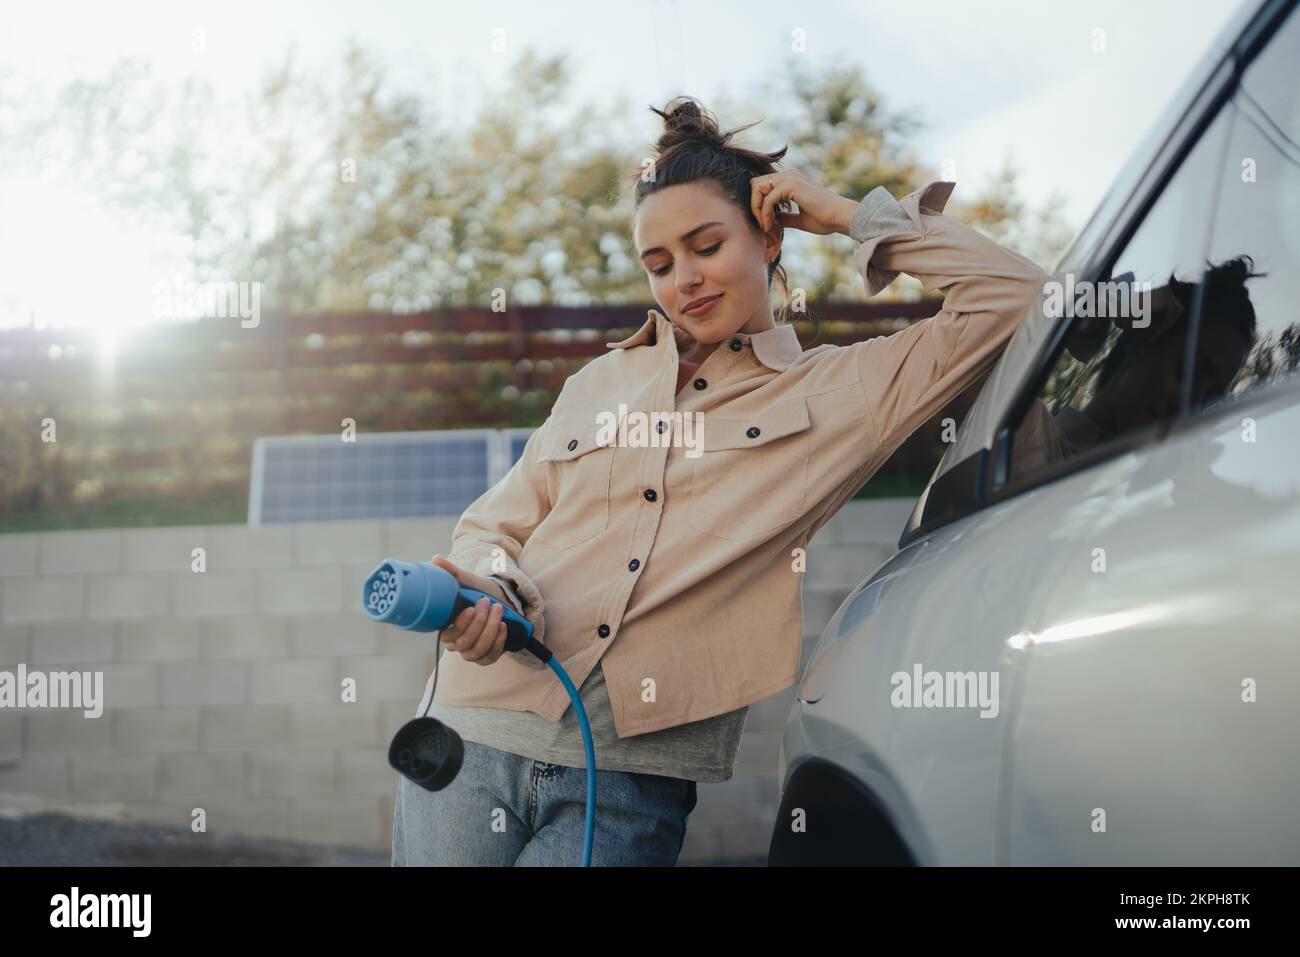 Mujer joven que sostiene el cable de alimentación de su coche eléctrico, preparado para cargarlo en el hogar, sostenible y económico concepto de transporte. Foto de stock